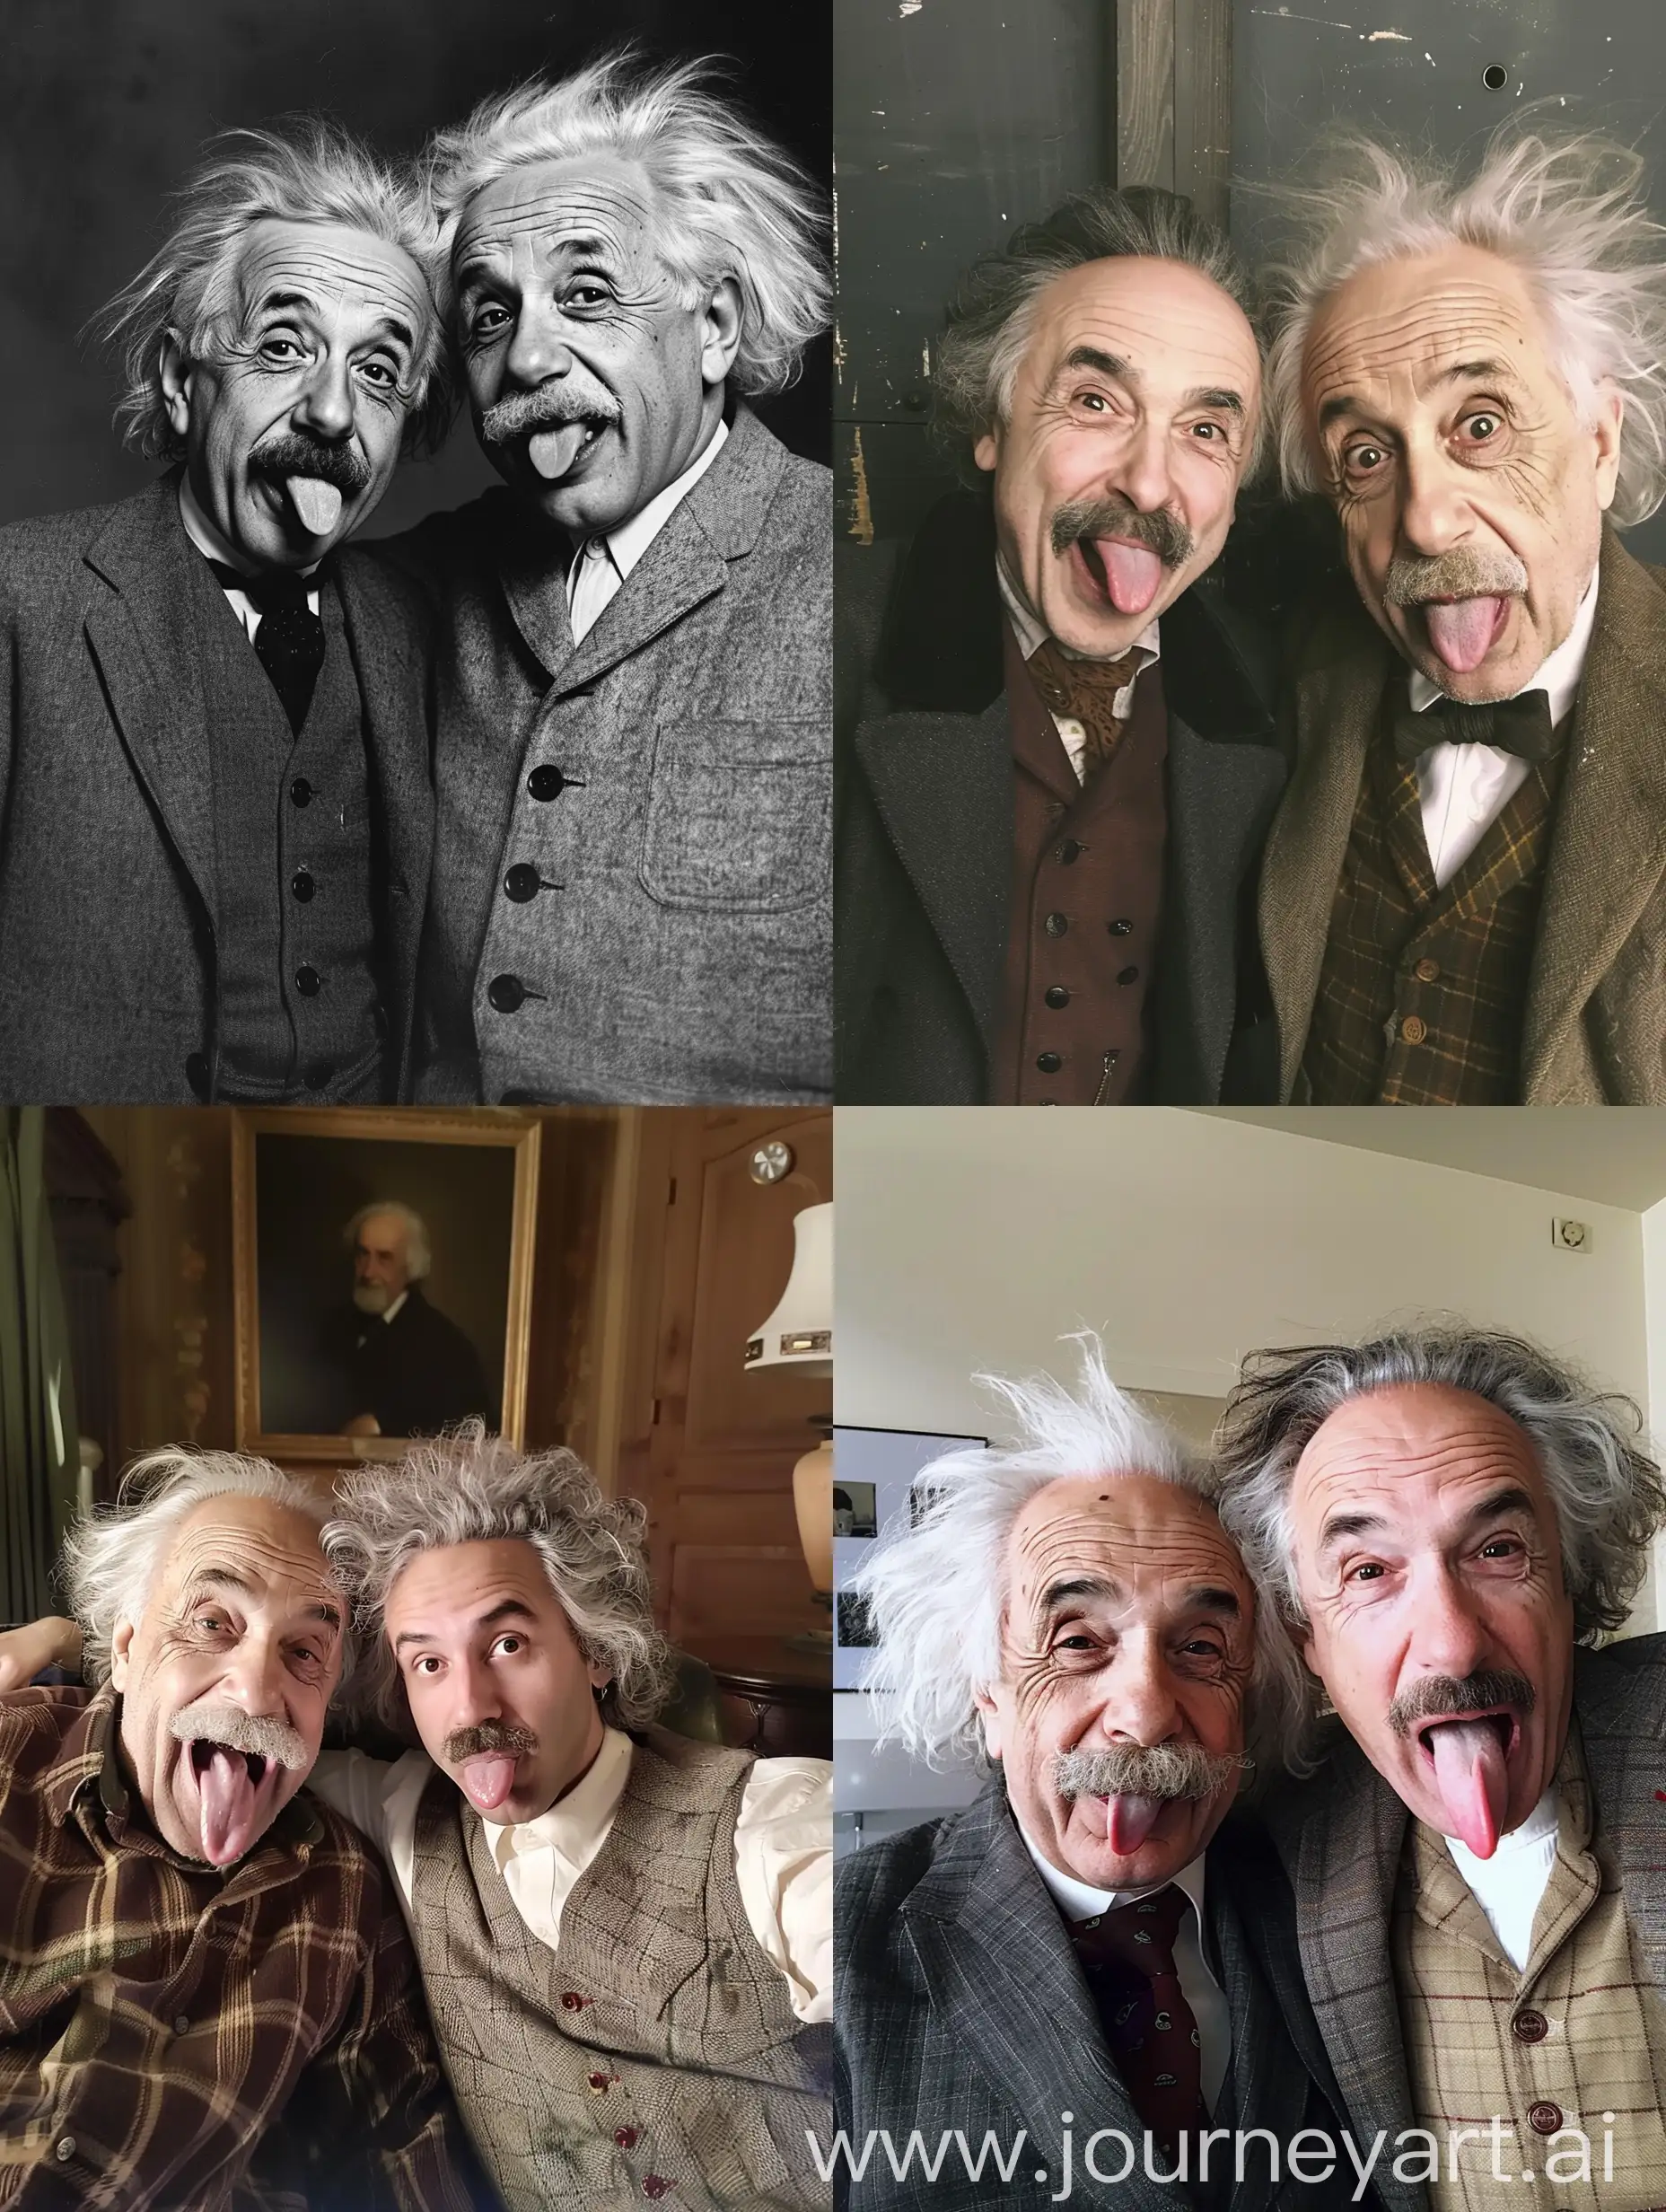 أريد صورة لي مع أينشتاين ،نكون مخرجين ألسنتنا بها 